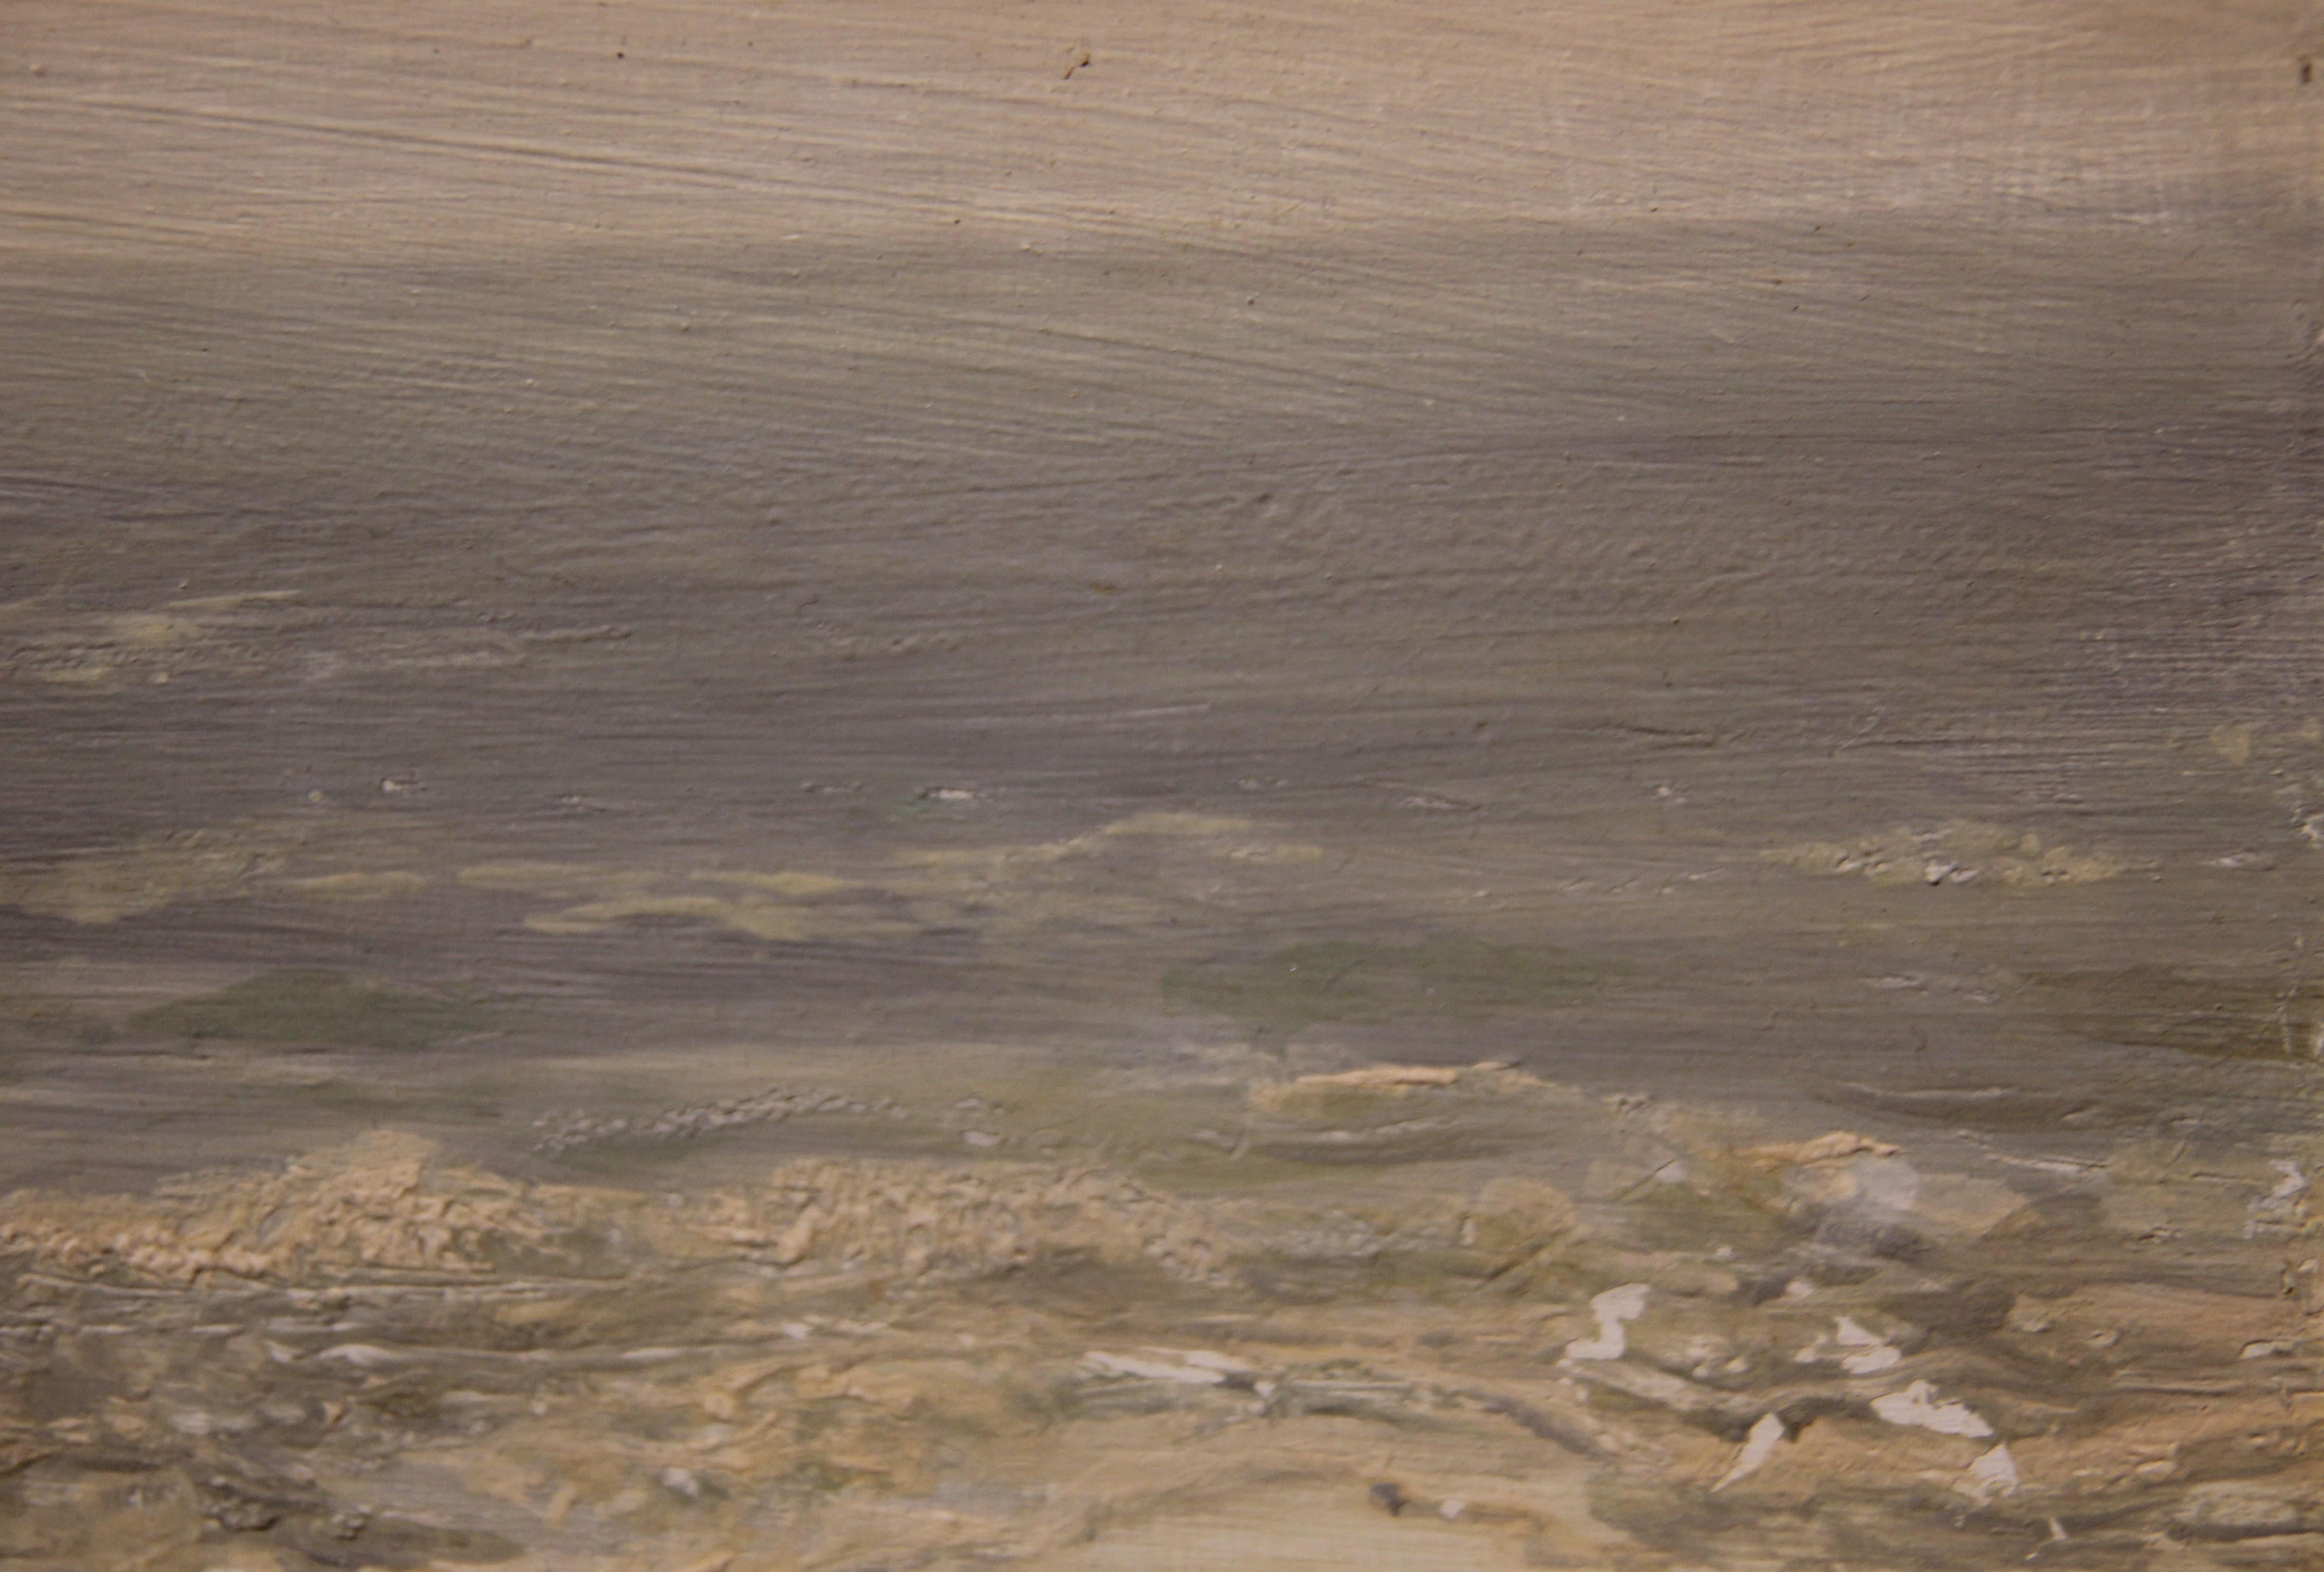 Naturalistisches impressionistisches Meereslandschaftsgemälde im Woodstock-Stil, signiert Mara (Naturalismus), Painting, von Unknown